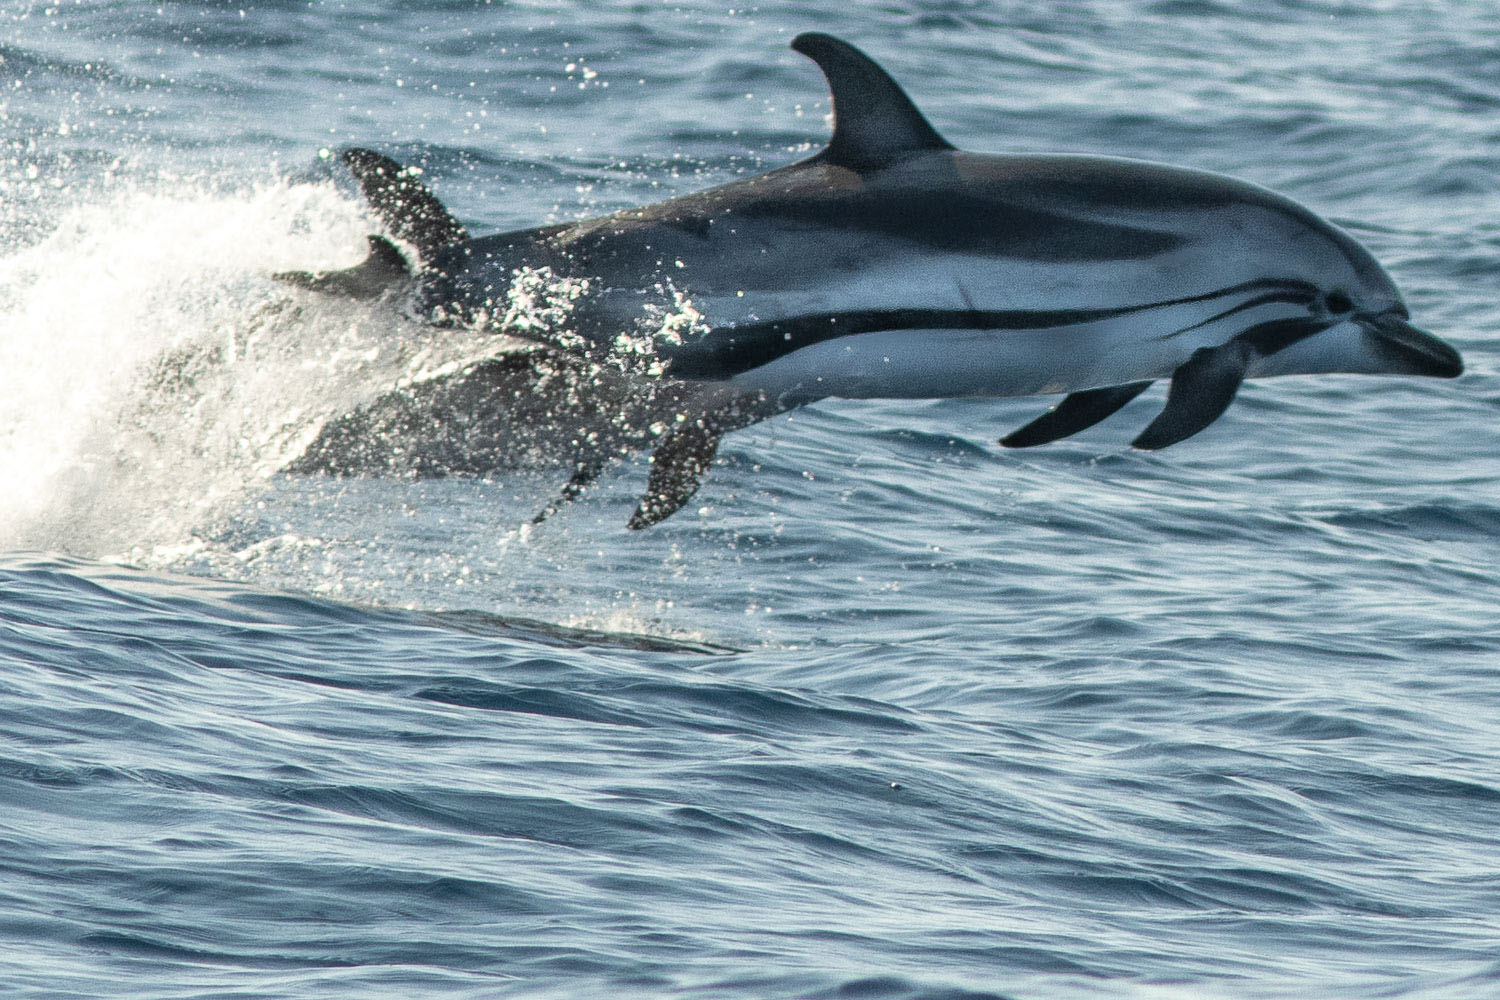 voyage scientifique - cetaces de mediterranee vers la corse a la voile 14